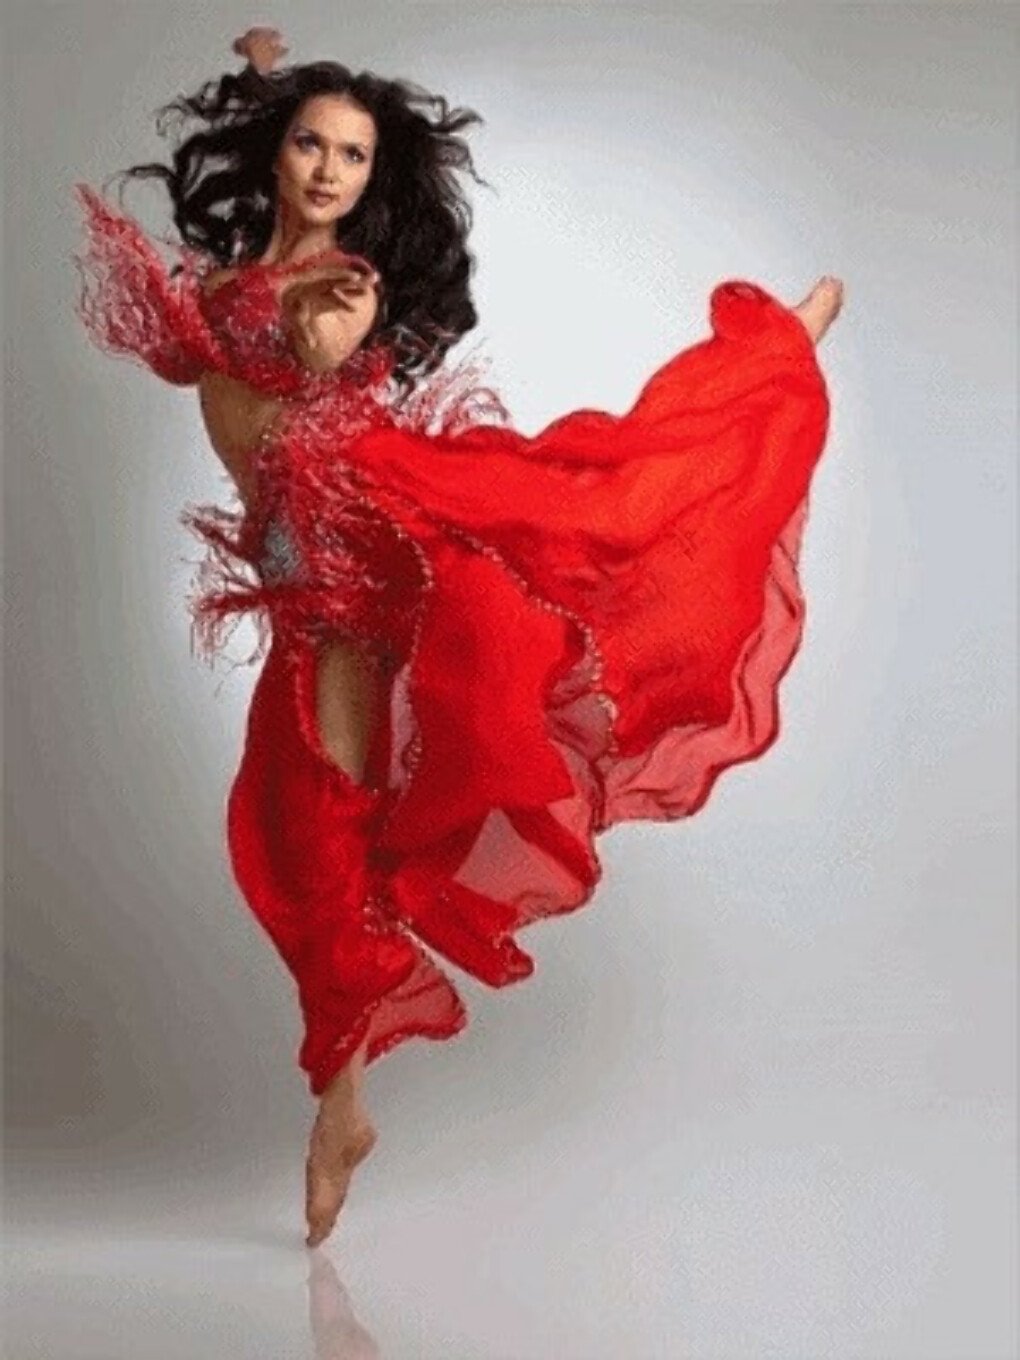 Очень красивая девушка красиво танцует. Танцующая женщина. Танцовщица. Красивая девушка танцует. Танцующая девушка в платье.